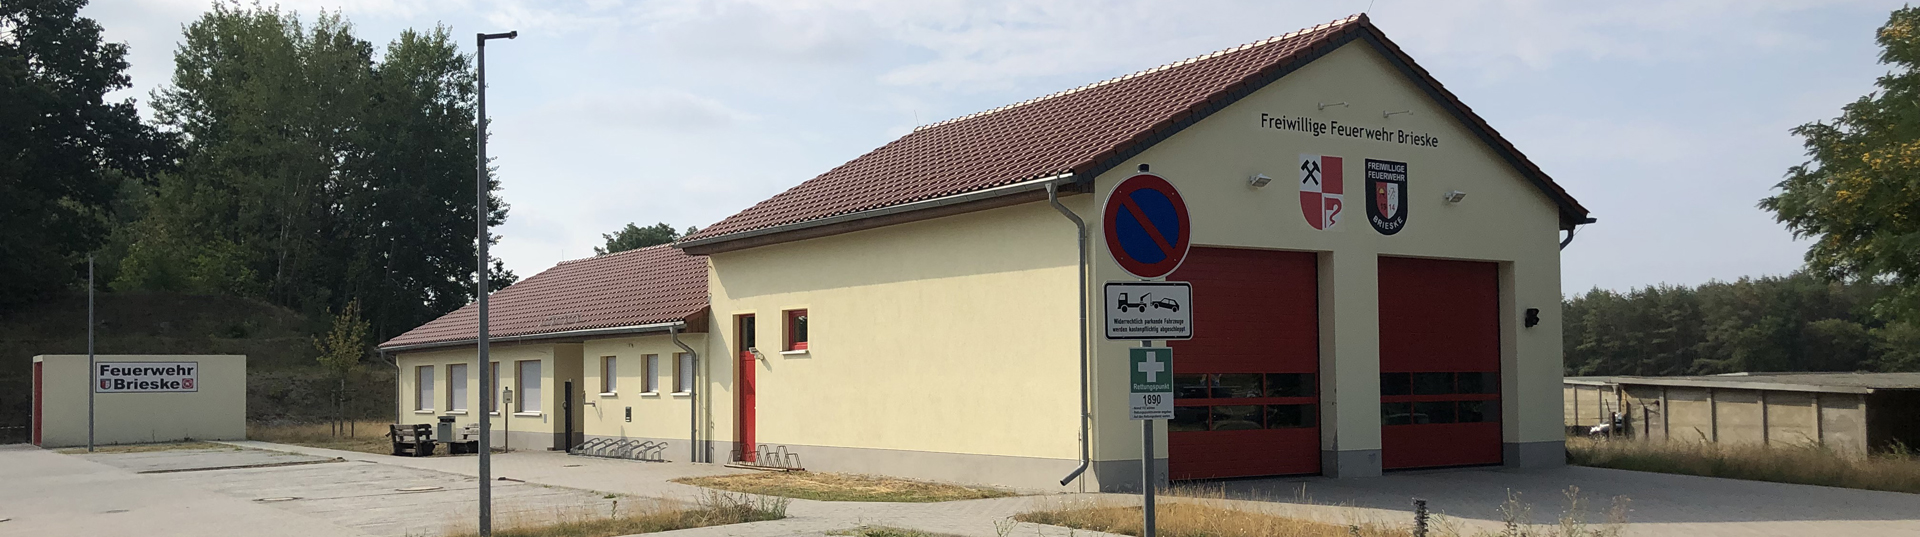 ALB Dachbau GmbH - Dachdeckerei, Zimmerei und Klempnerei aus Senftenberg in Brandenburg